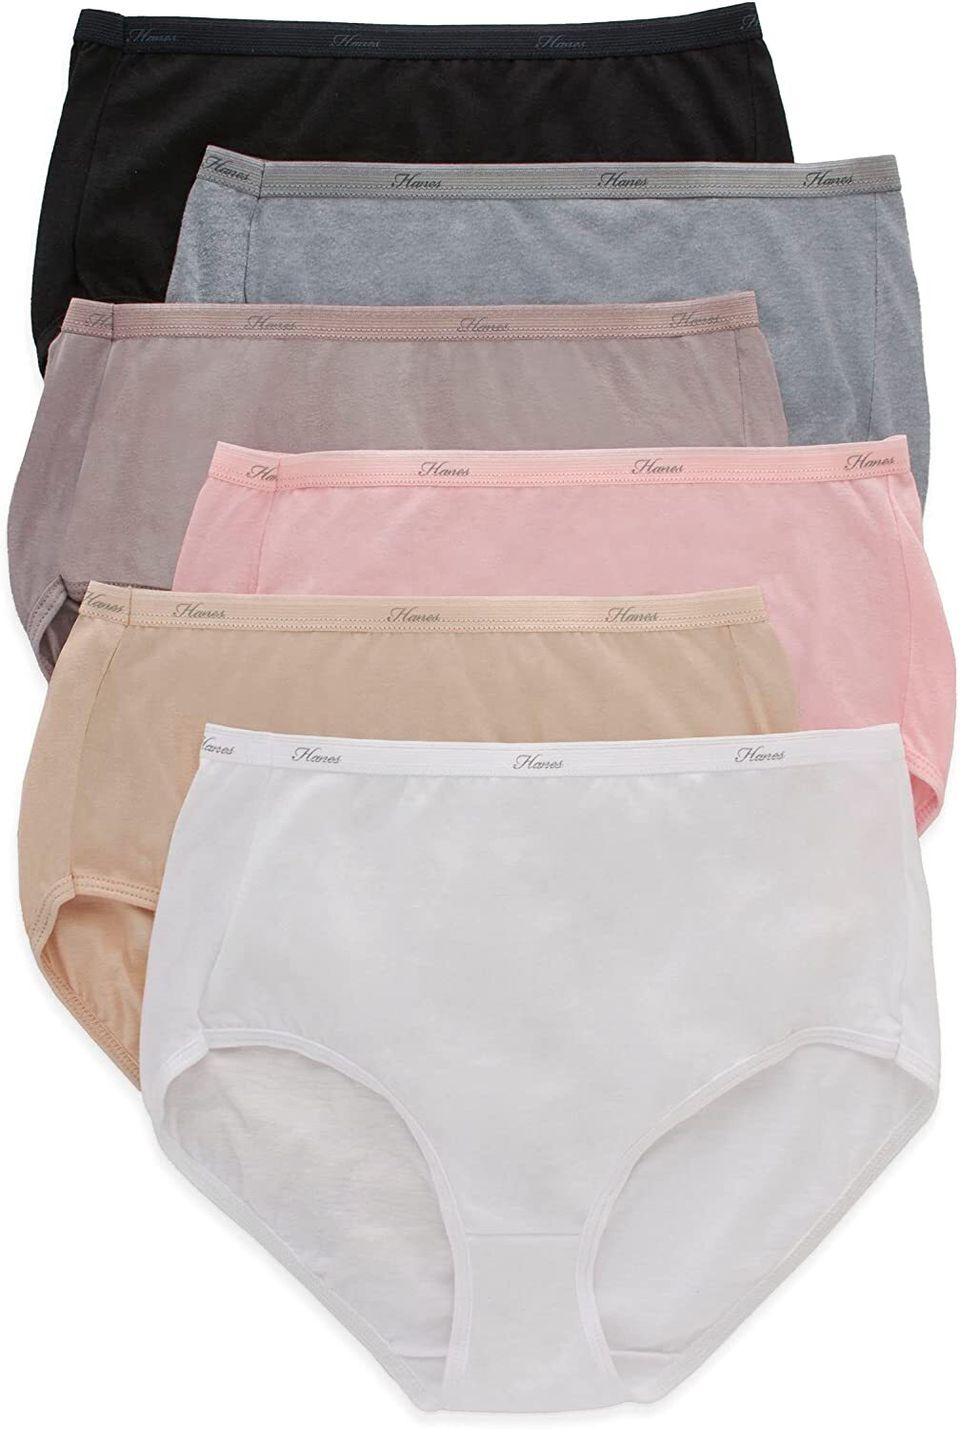 Hanes Women's Microfiber Hipster Underwear, Moisture-Wicking, 10-Pack